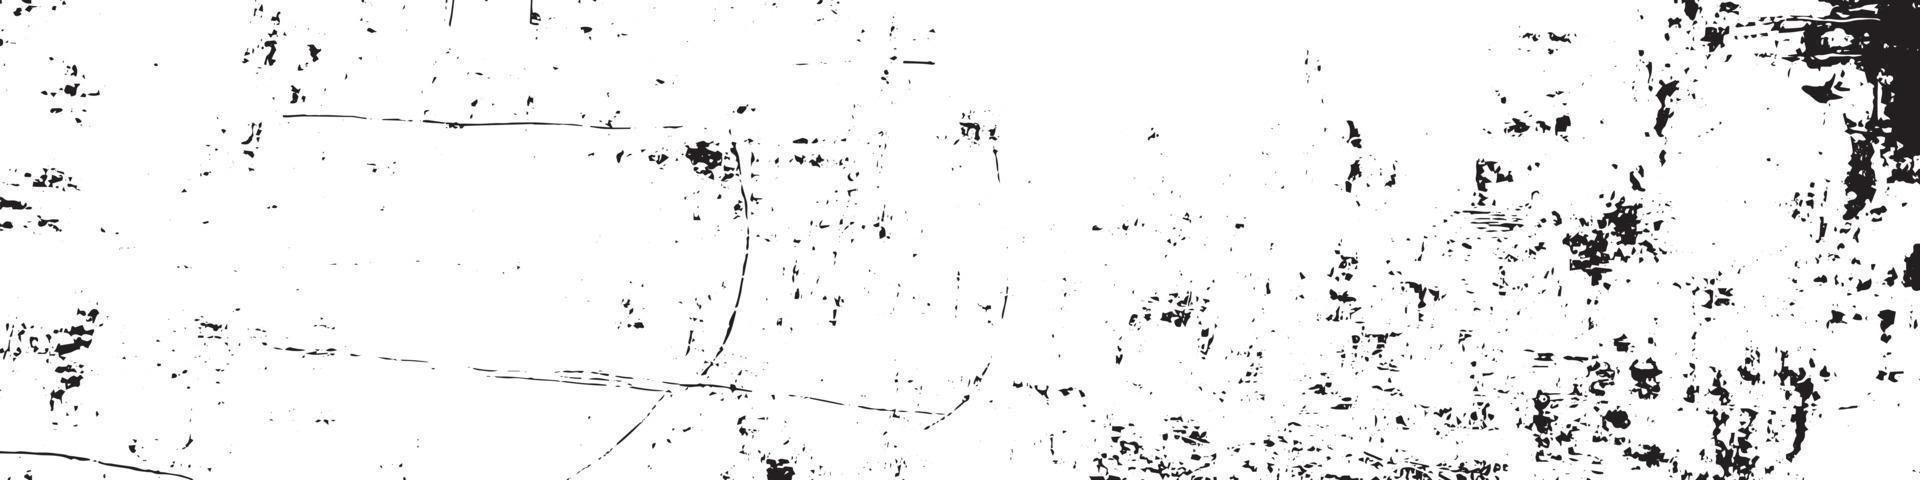 schwarz-weiße Distress-Overlay-Textur. alt im Alter von Vintage-Hintergrund. vektor